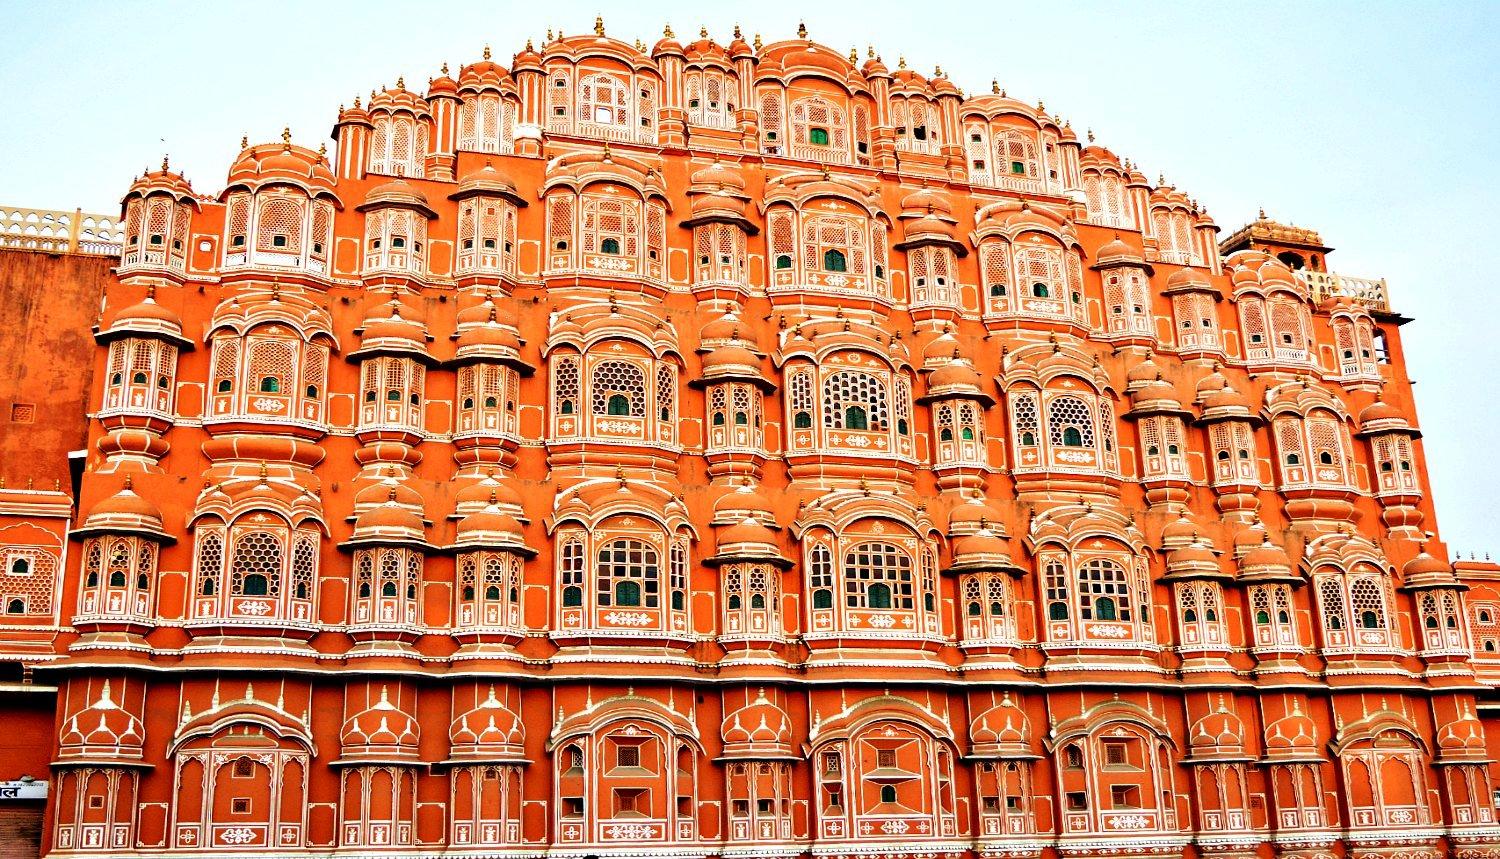 Hawa Mahal Jaipur Entry Fee, Timings, History, Image, Information